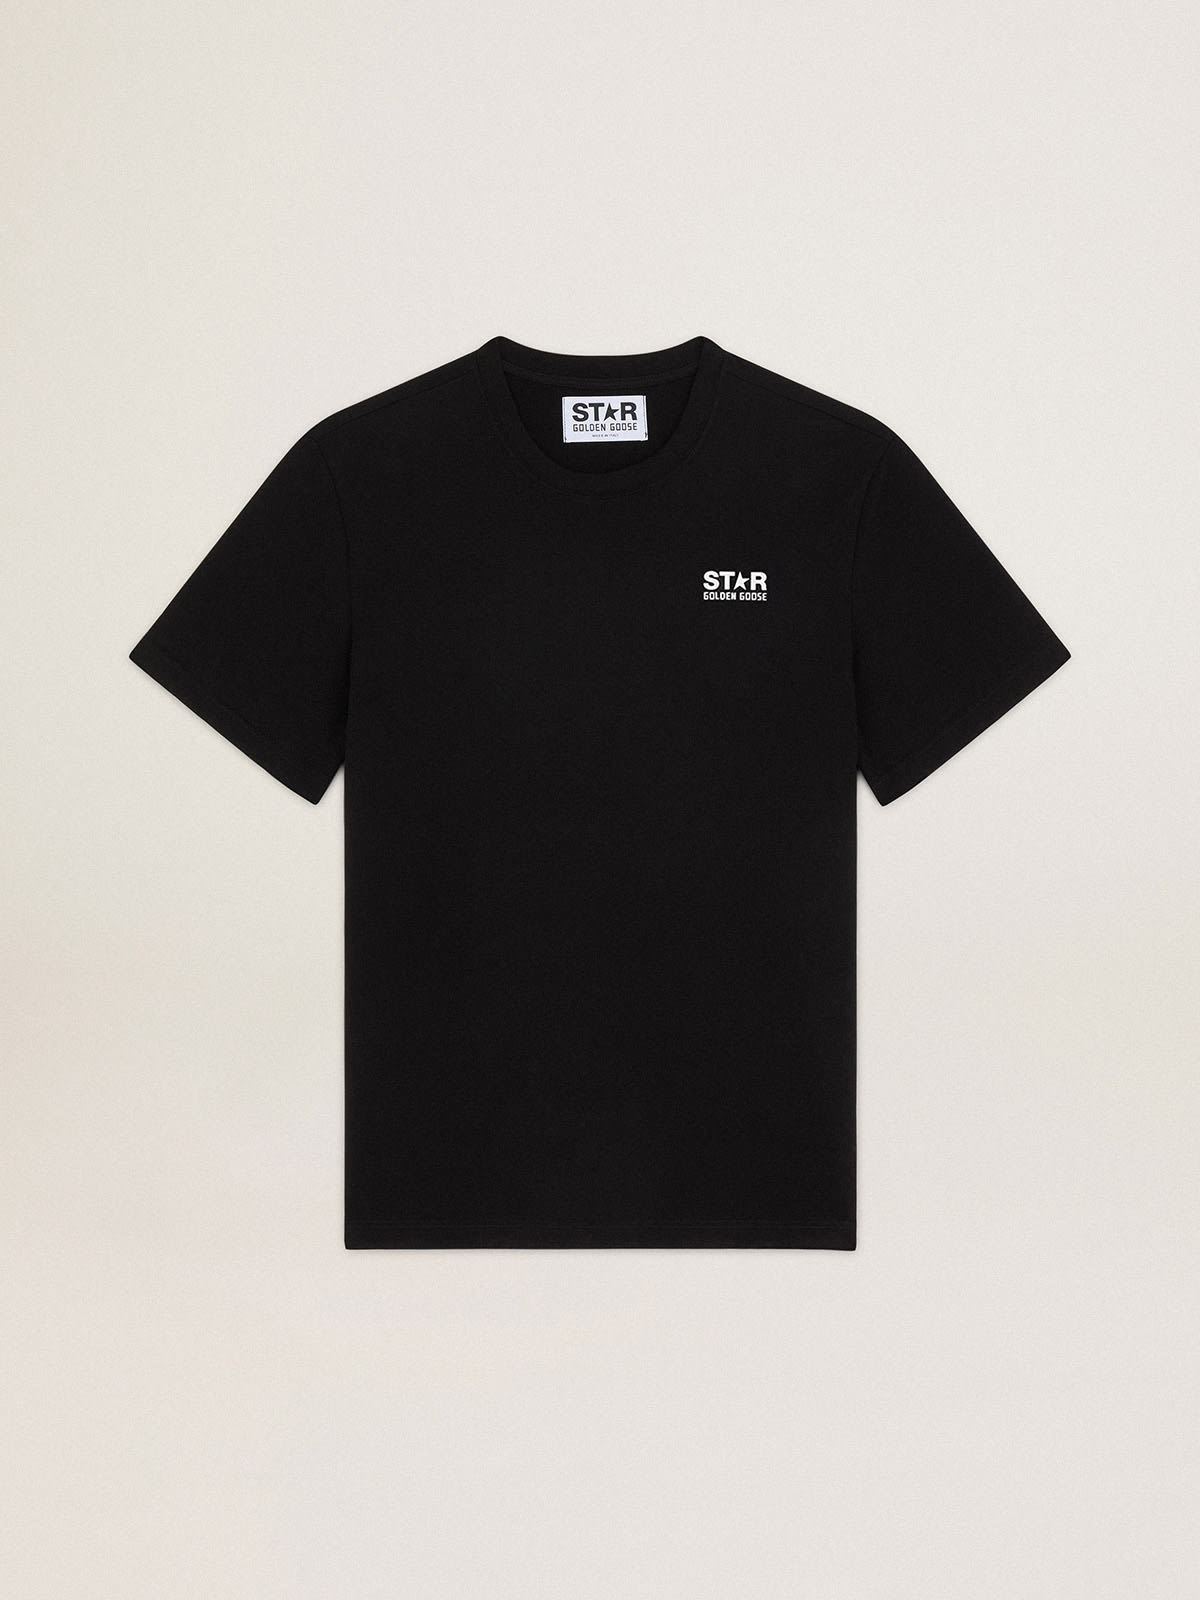 Camiseta negra de mujer de la Colección Star con logotipo y